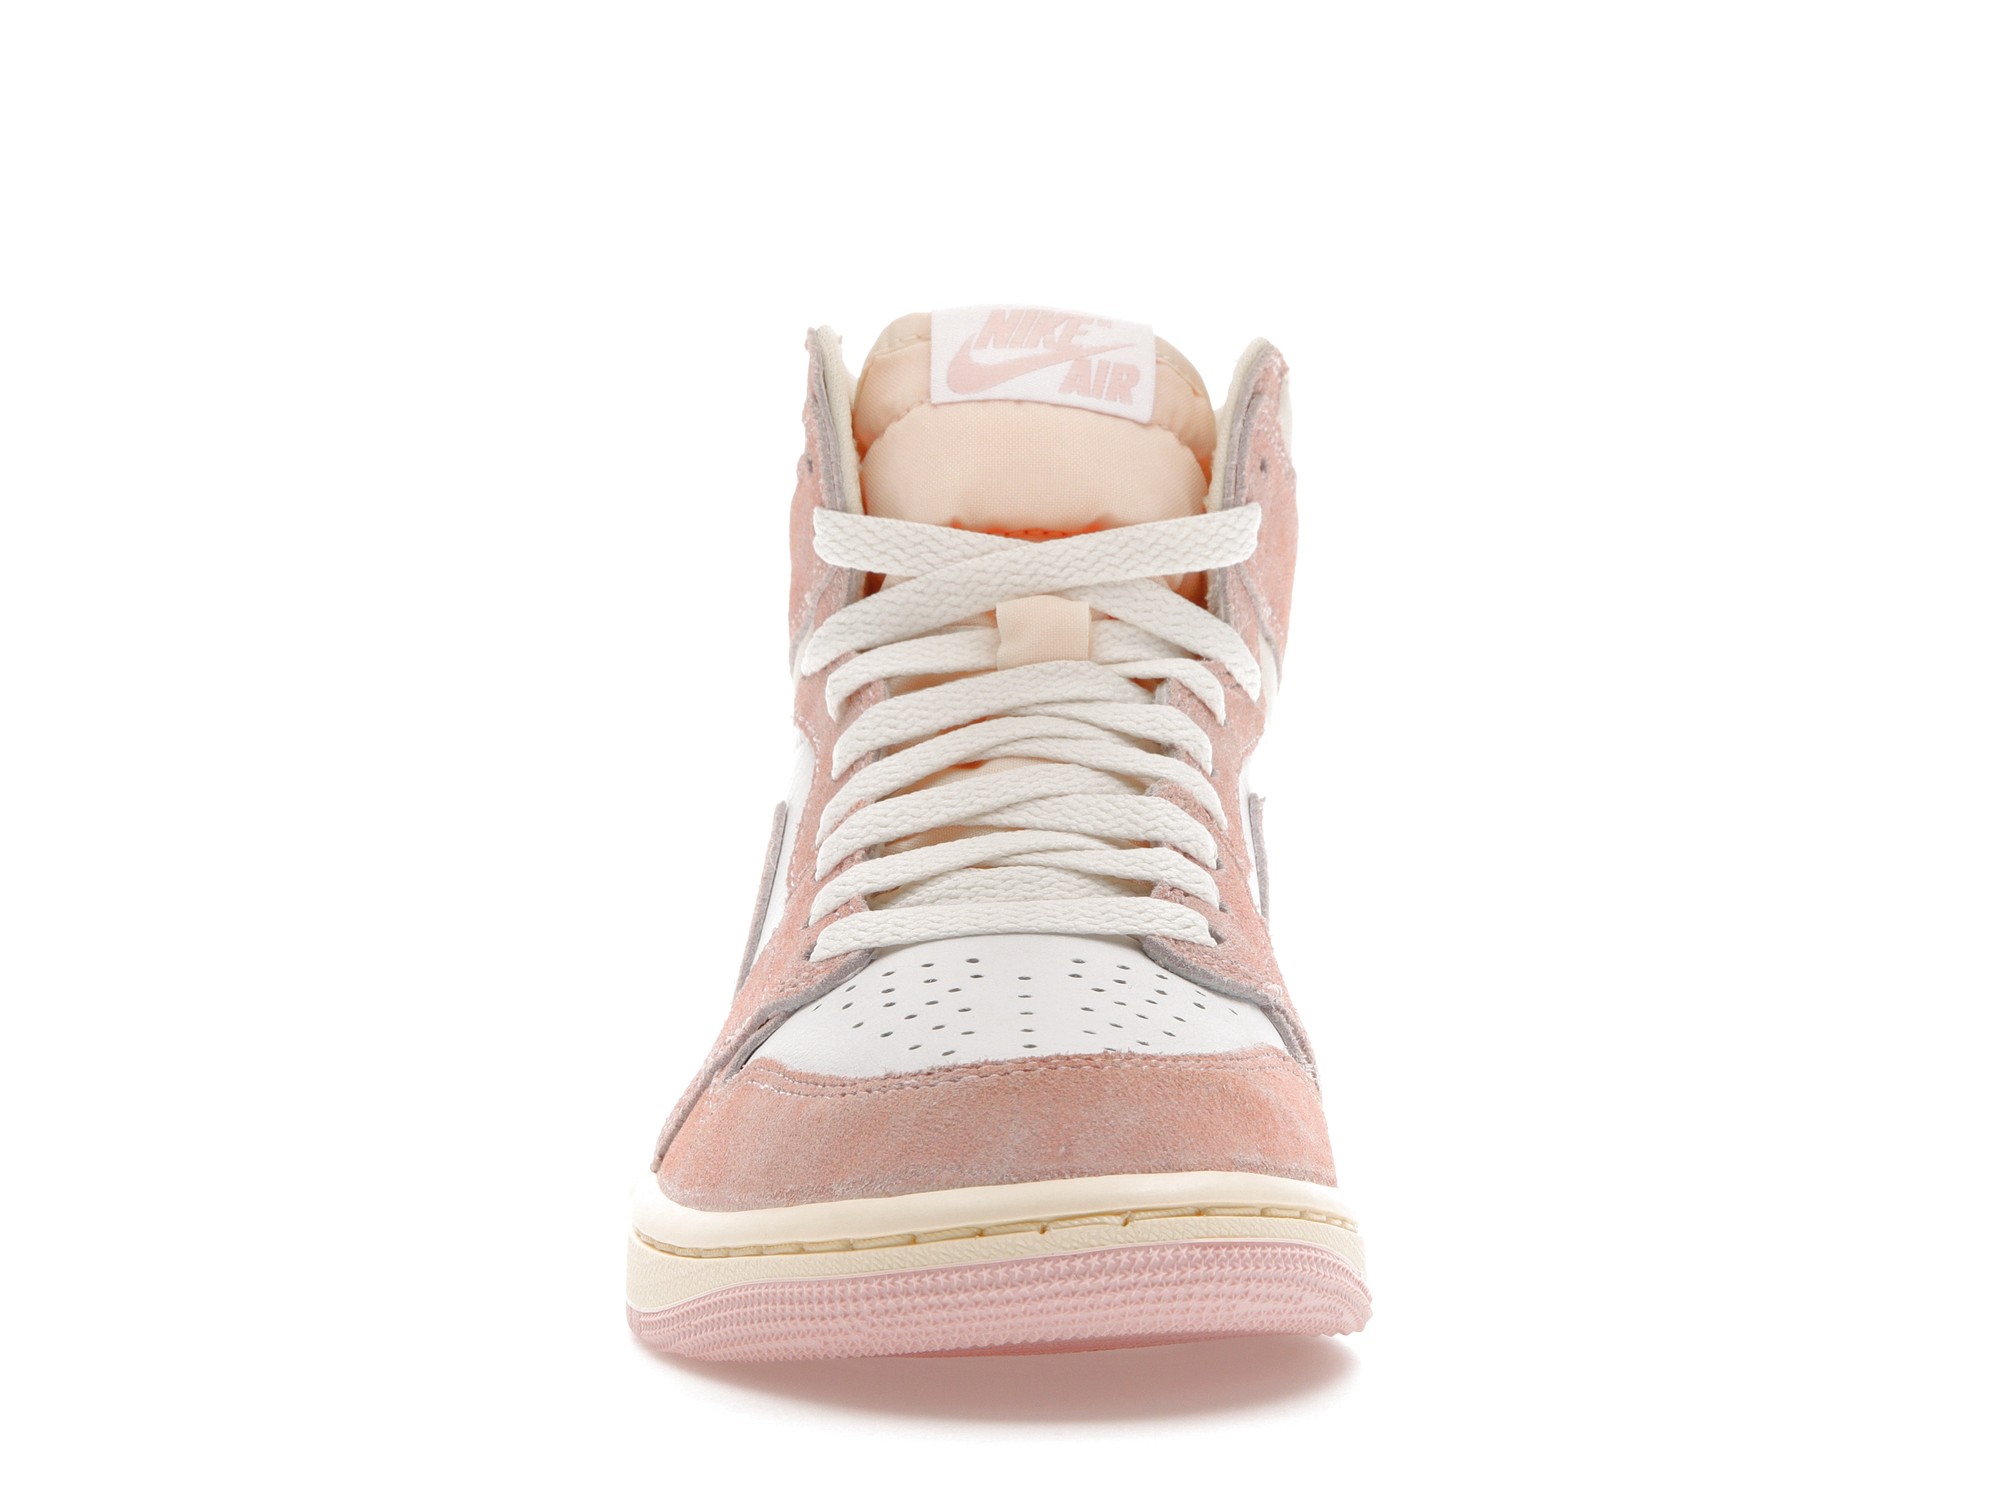 Skor för Air Jordan 1 Retro High OG Washed Pink W online